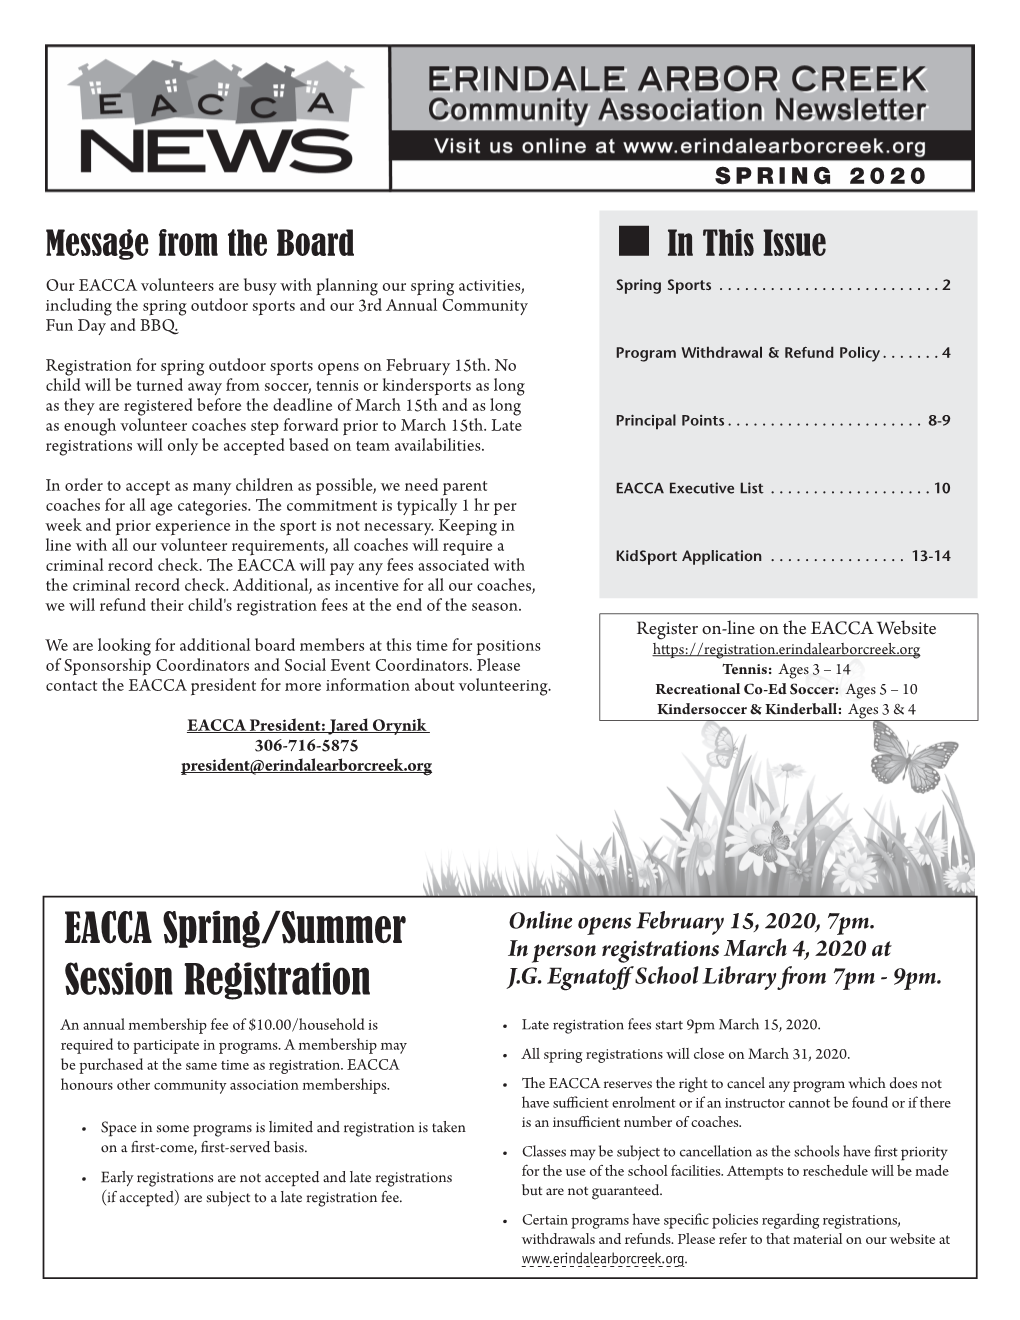 EACCA Newsletter, Summer 2005